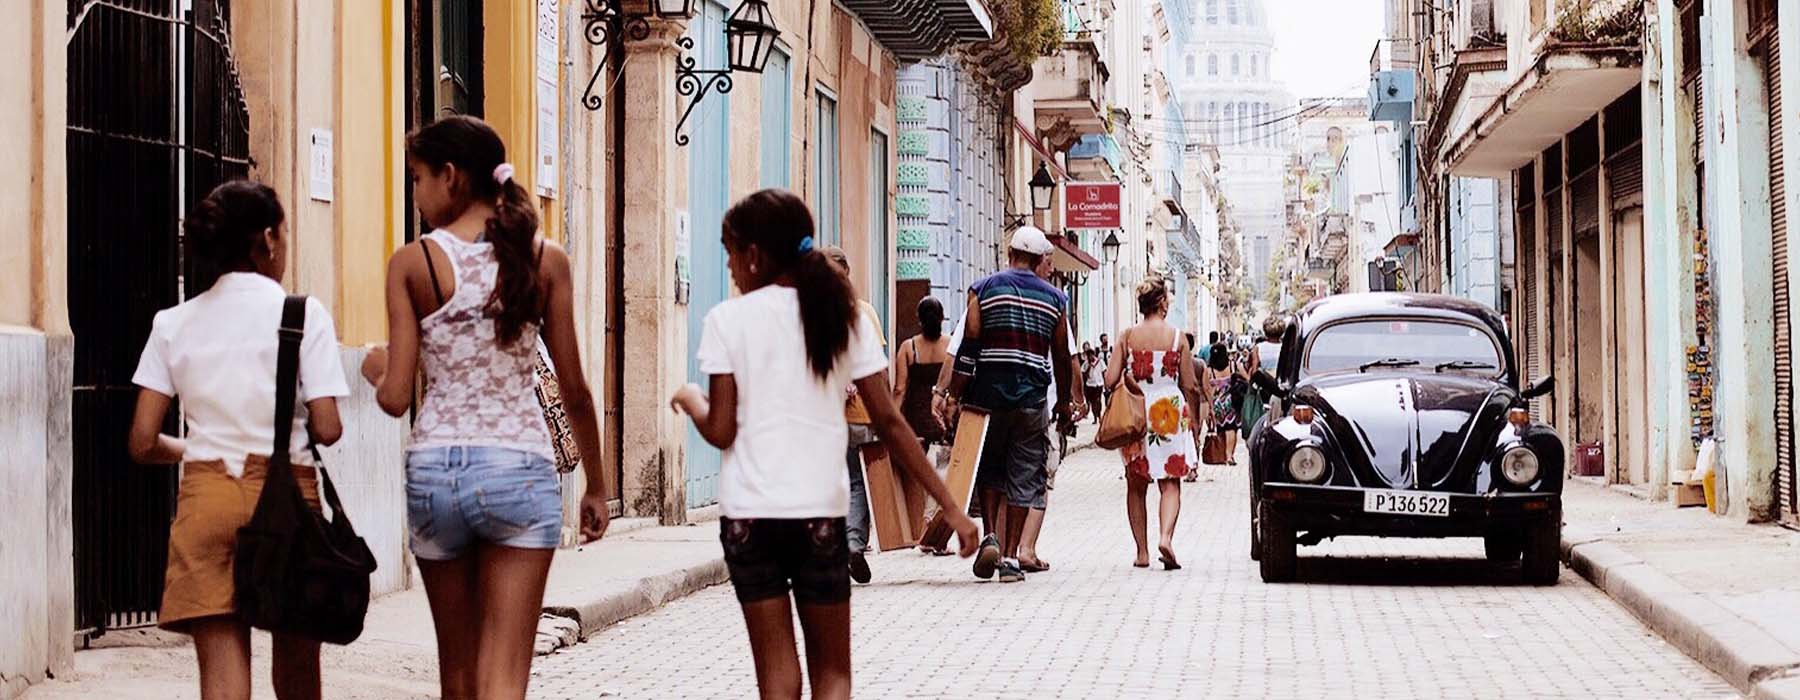 Cuba<br class="hidden-md hidden-lg" /> Family Holidays